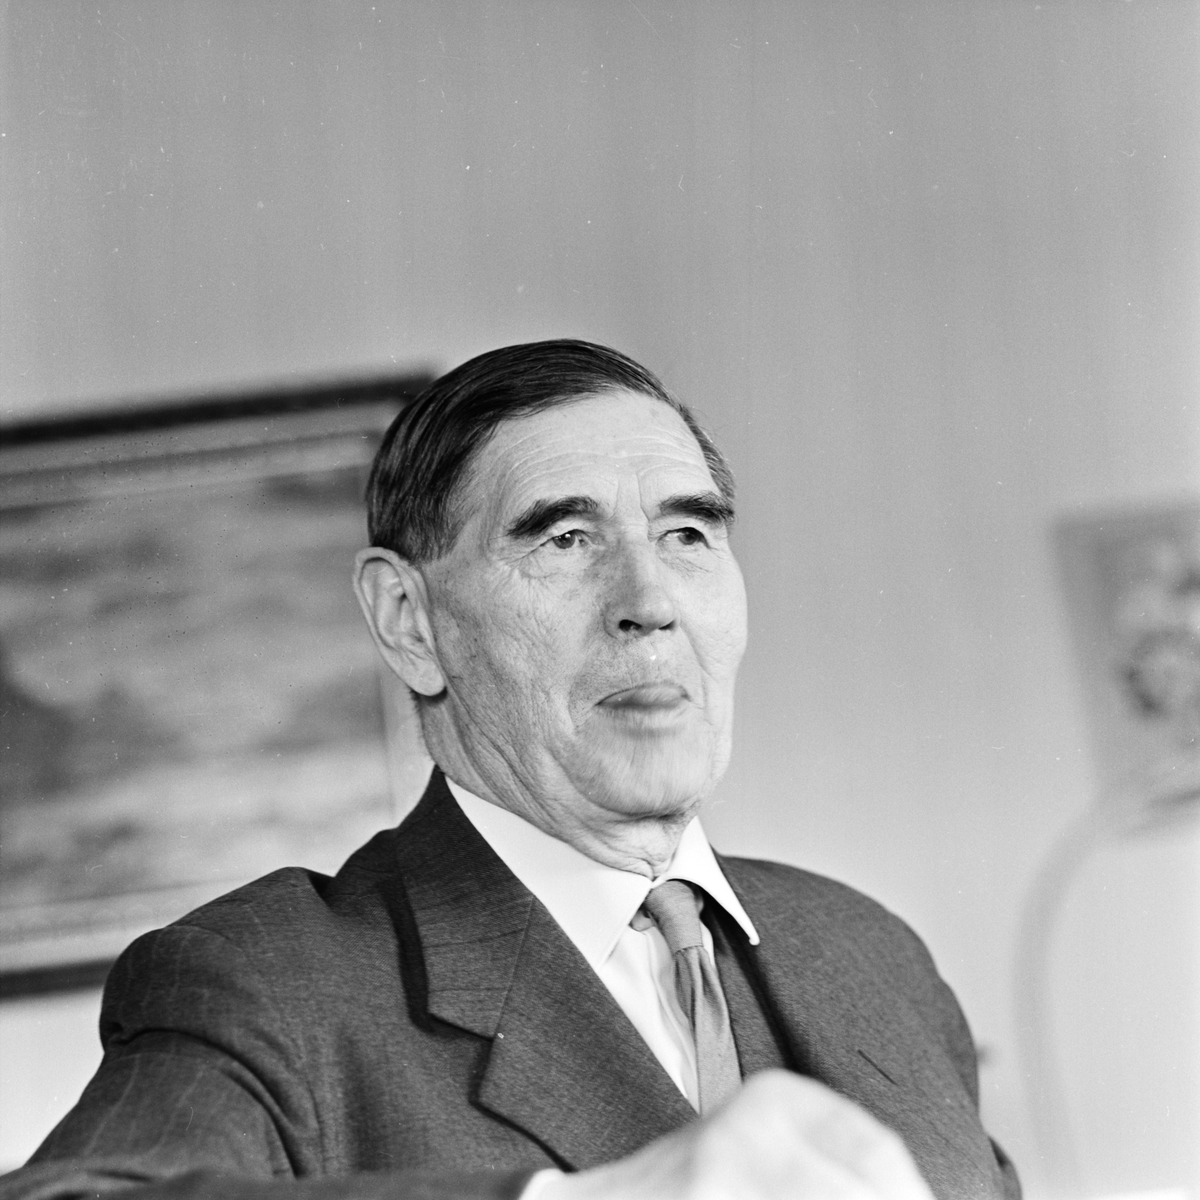 Professor Harald Norinder "ser fram emot en sommar med många blixtar", Uppsala maj 1963